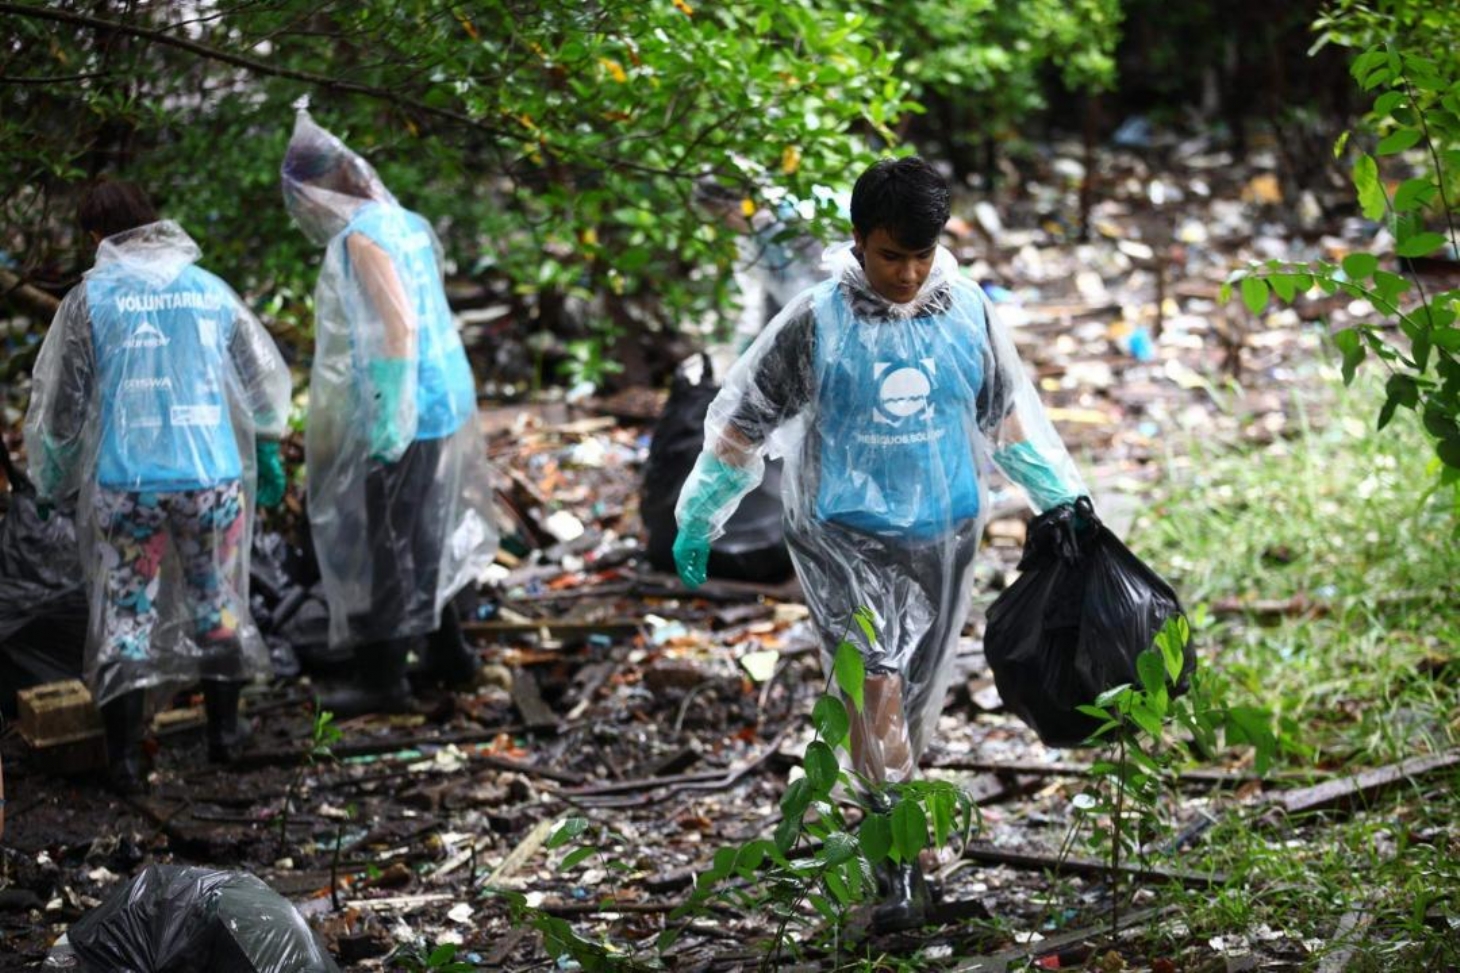 Mutirão inscreve voluntários para limpeza de mangue em Santos | Jornal da Orla